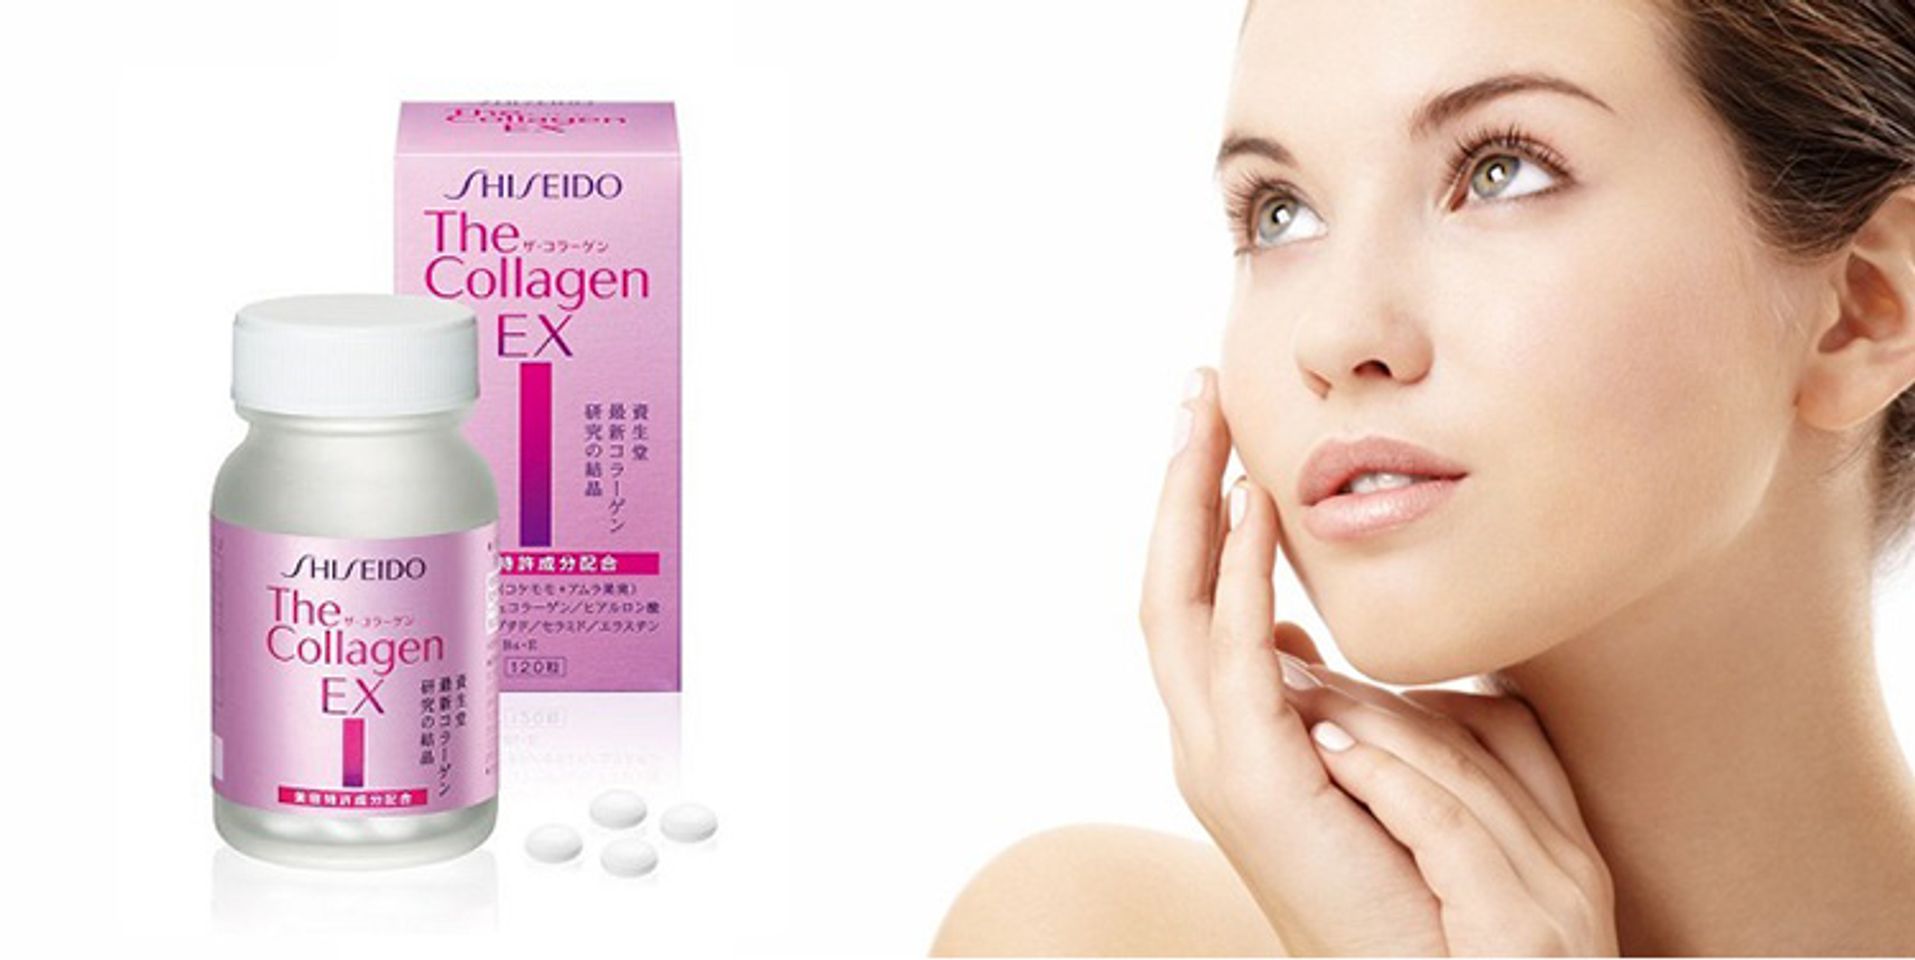 Review Collagen Shiseido Ex dạng viên có tốt không